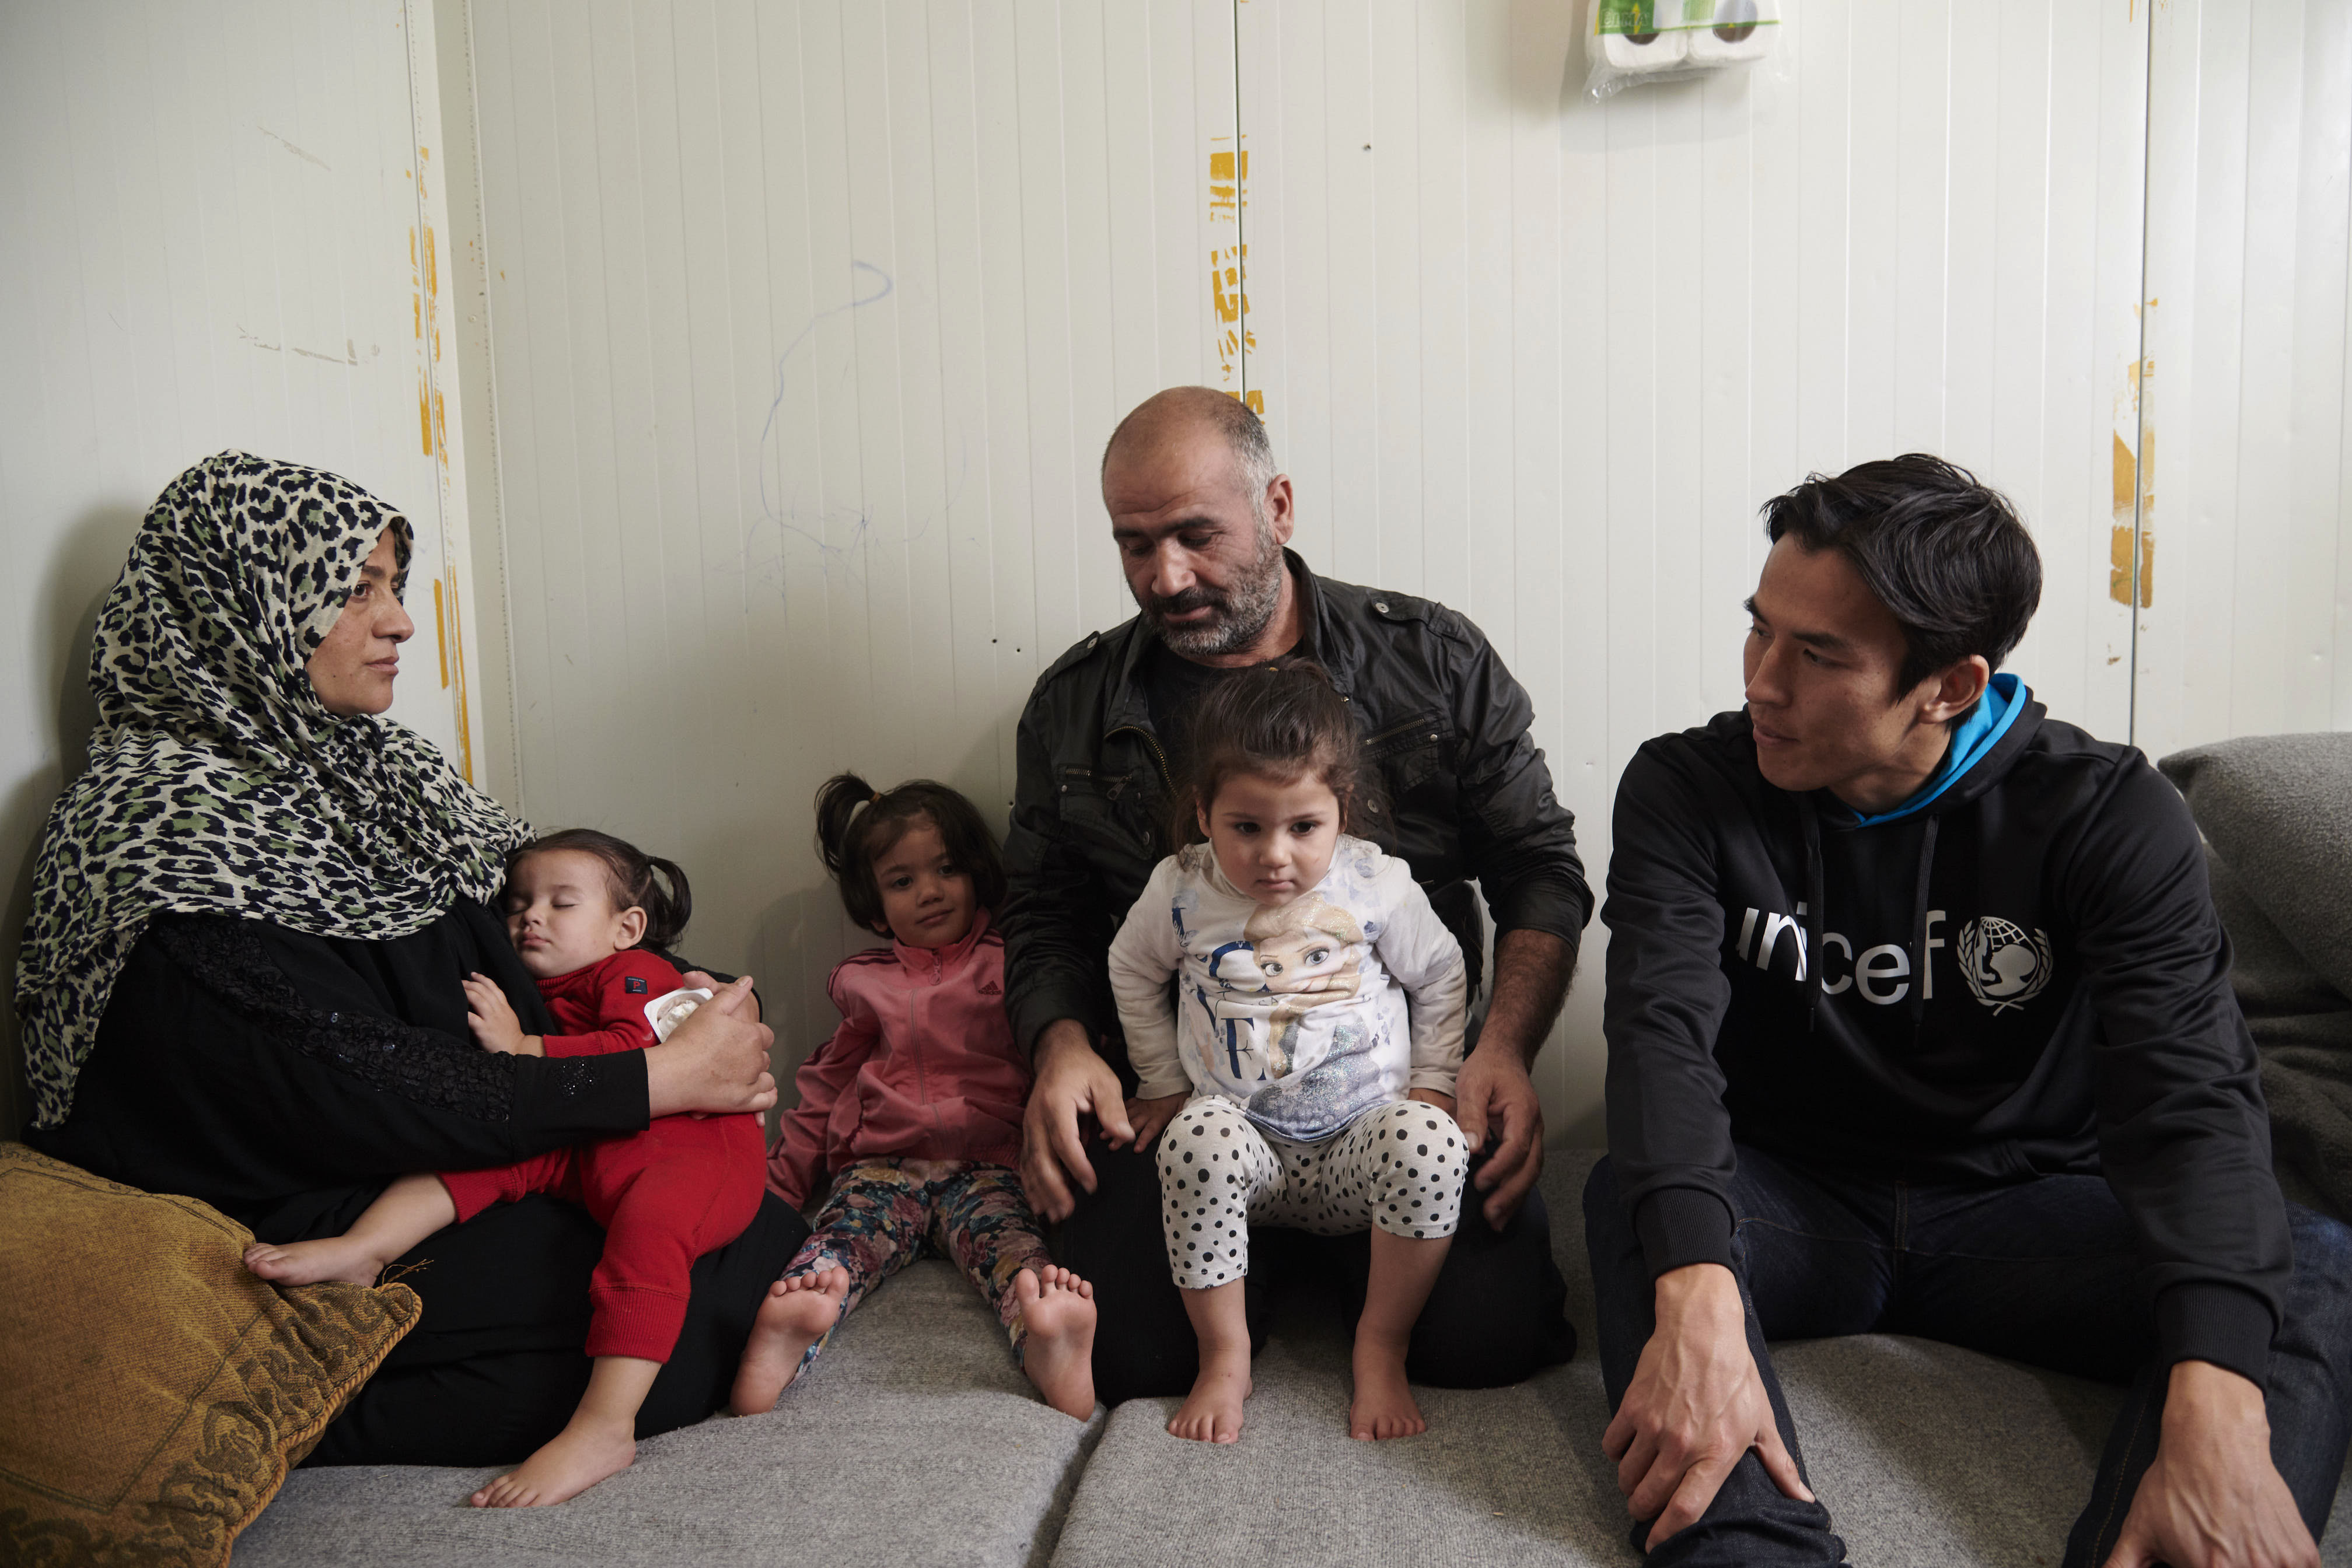 2018年にギリシャのエスカラマンガス難民キャンプを訪れた時、タレックさんの両親から、シリアからギリシャに逃れて来た時の様子を聞く長谷部大使。(ギリシャ、2018年11月撮影)